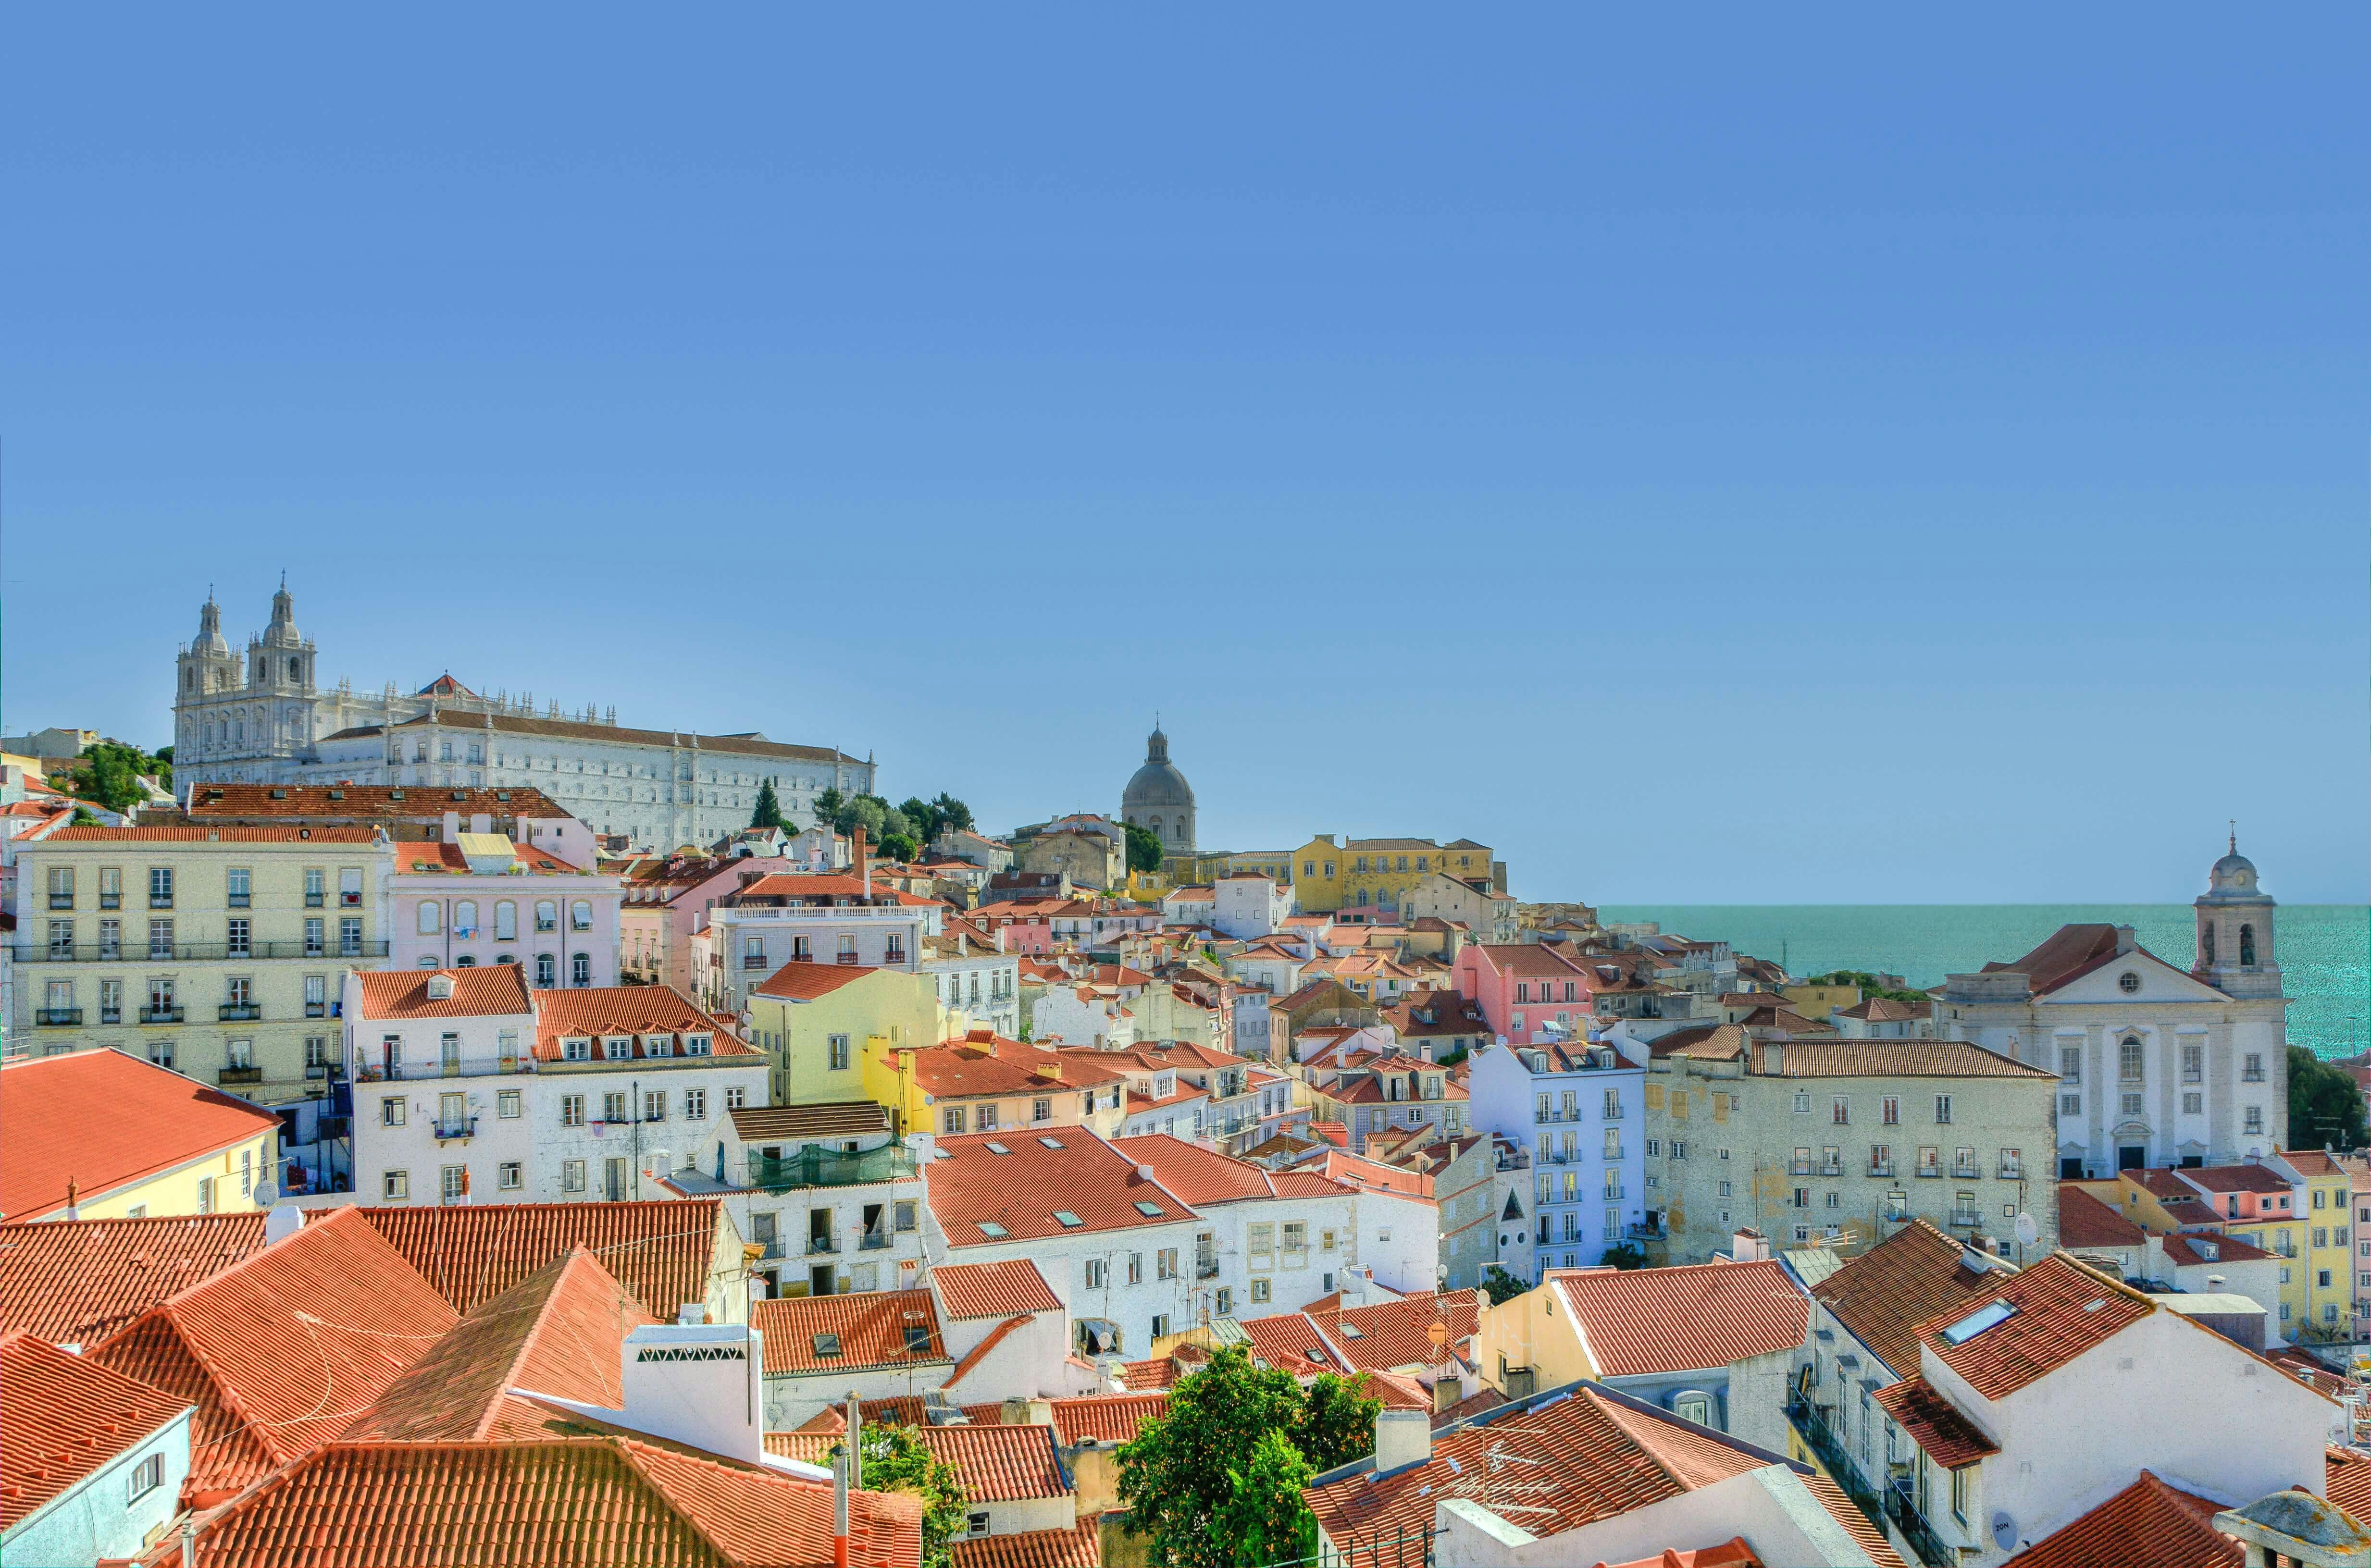 Vista panorâmica de Lisboa a partir do bairro da Sé, mostrando os telhados de terracota da cidade e o Rio Tejo.